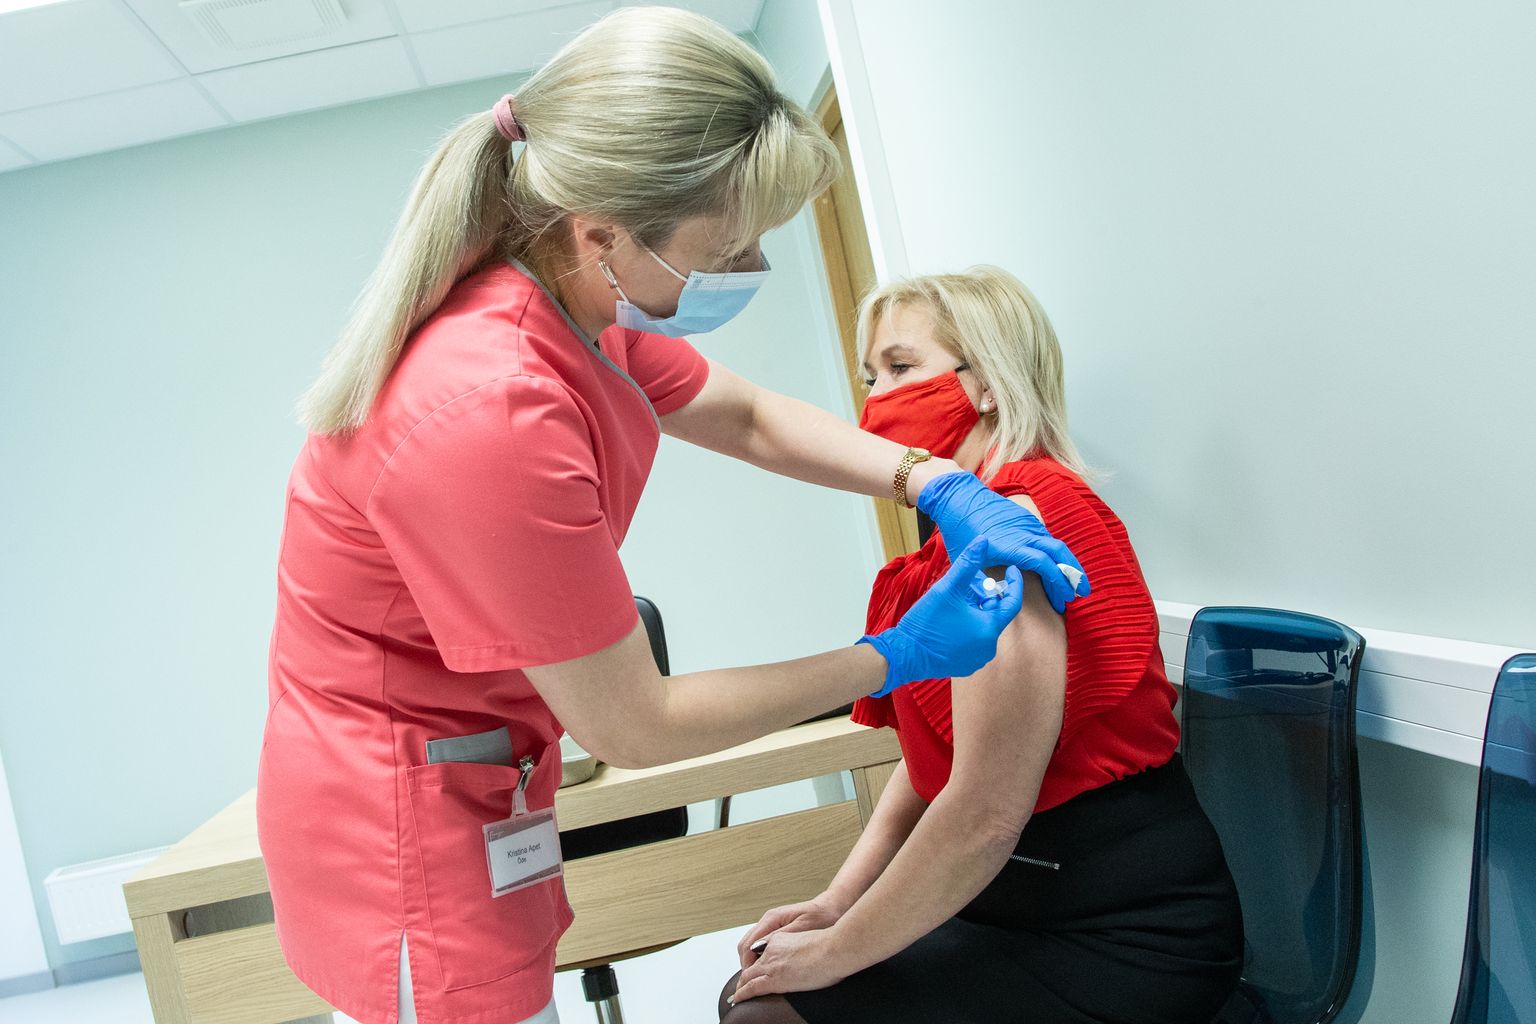 "Silmarõõm S" вакцинирует в четверг, 1 июля, с 15.00 до 19.00 в торговом центре "Fama" в Нарве.